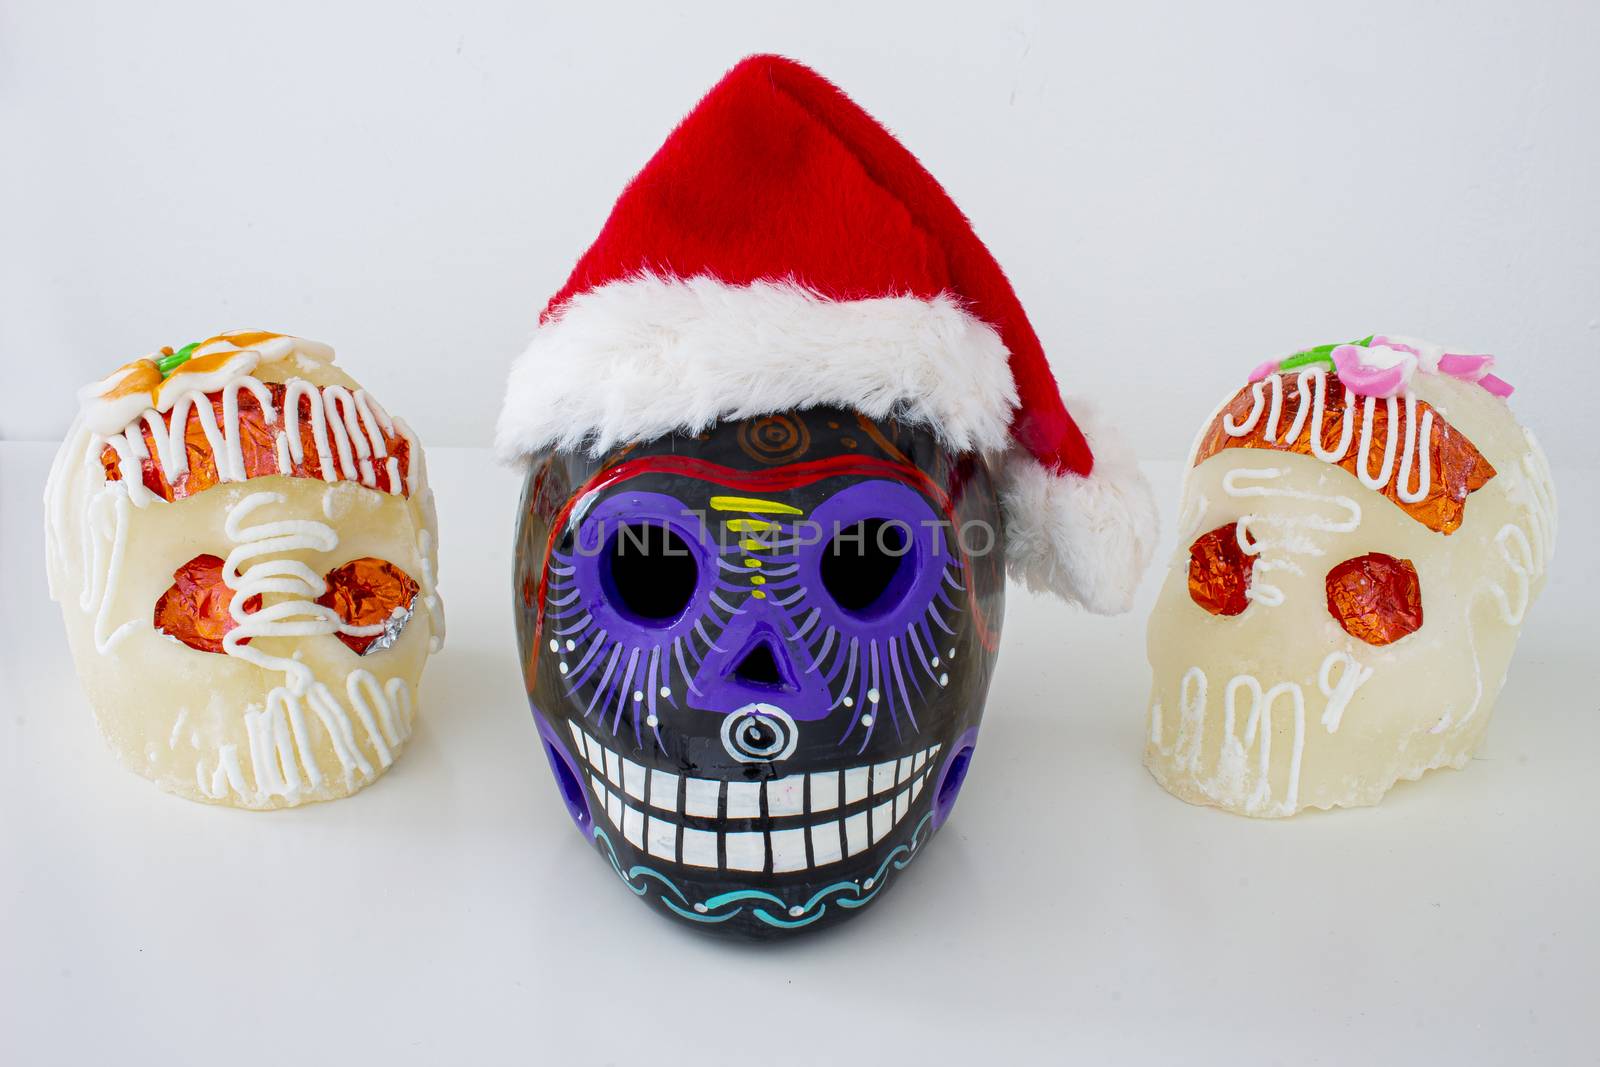 A Black Traditional Mexican sugar skulls with Santa hats. Mexican Christmas.(calaveritas de azucar para navidad en México) mix cultures. by oasisamuel